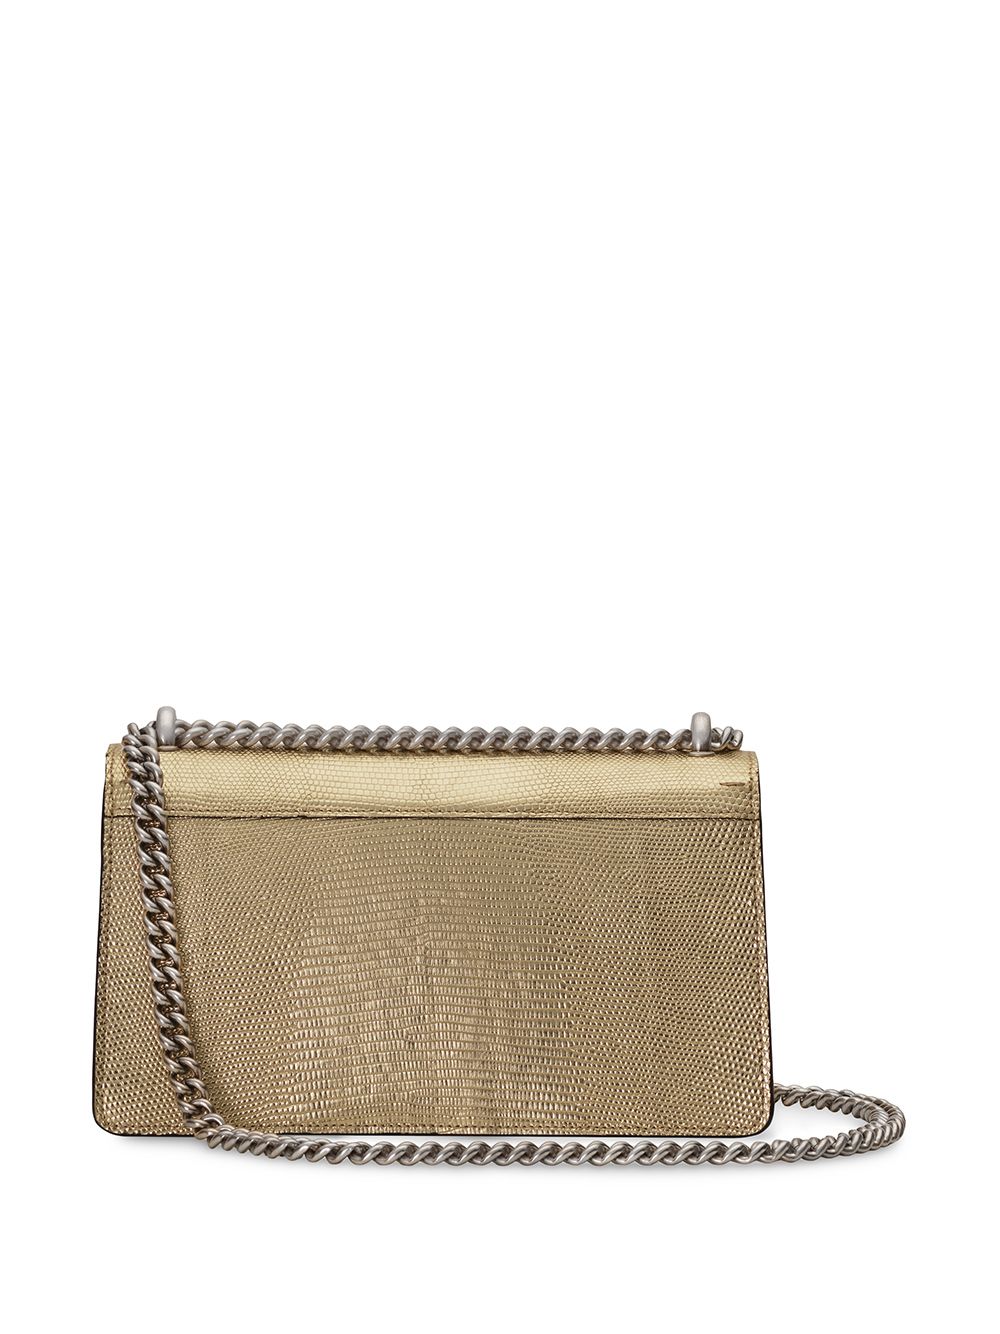 Gucci Small Size Metallic Dionysus Shoulder Bag - Farfetch